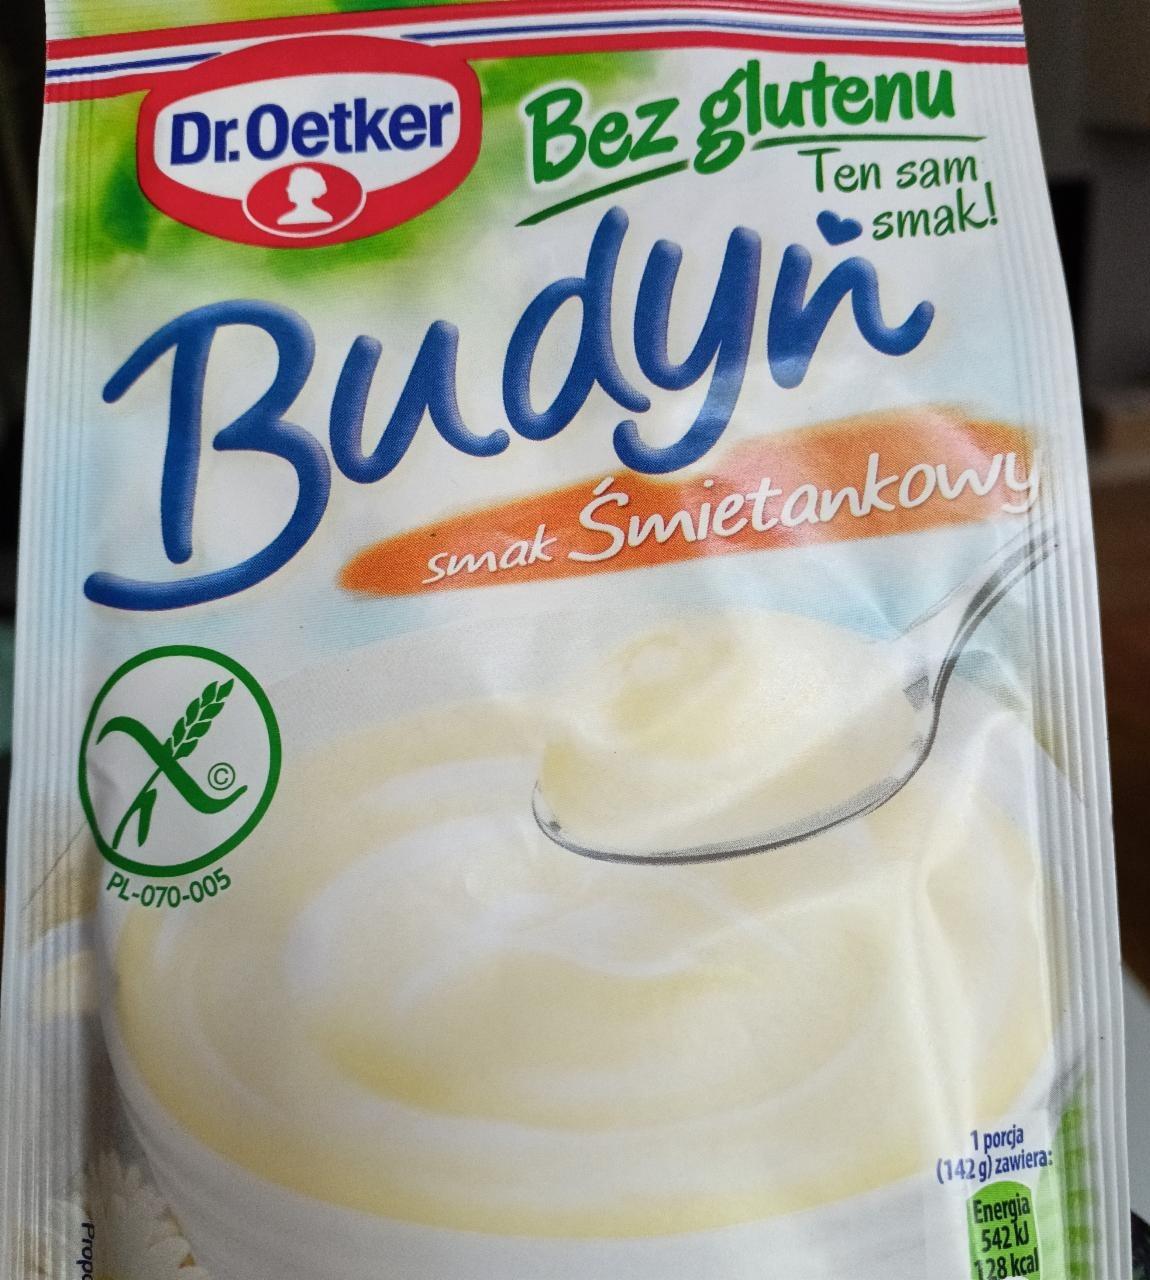 Zdjęcia - Budyń bez glutenu smak śmietankowy Dr. Oetker